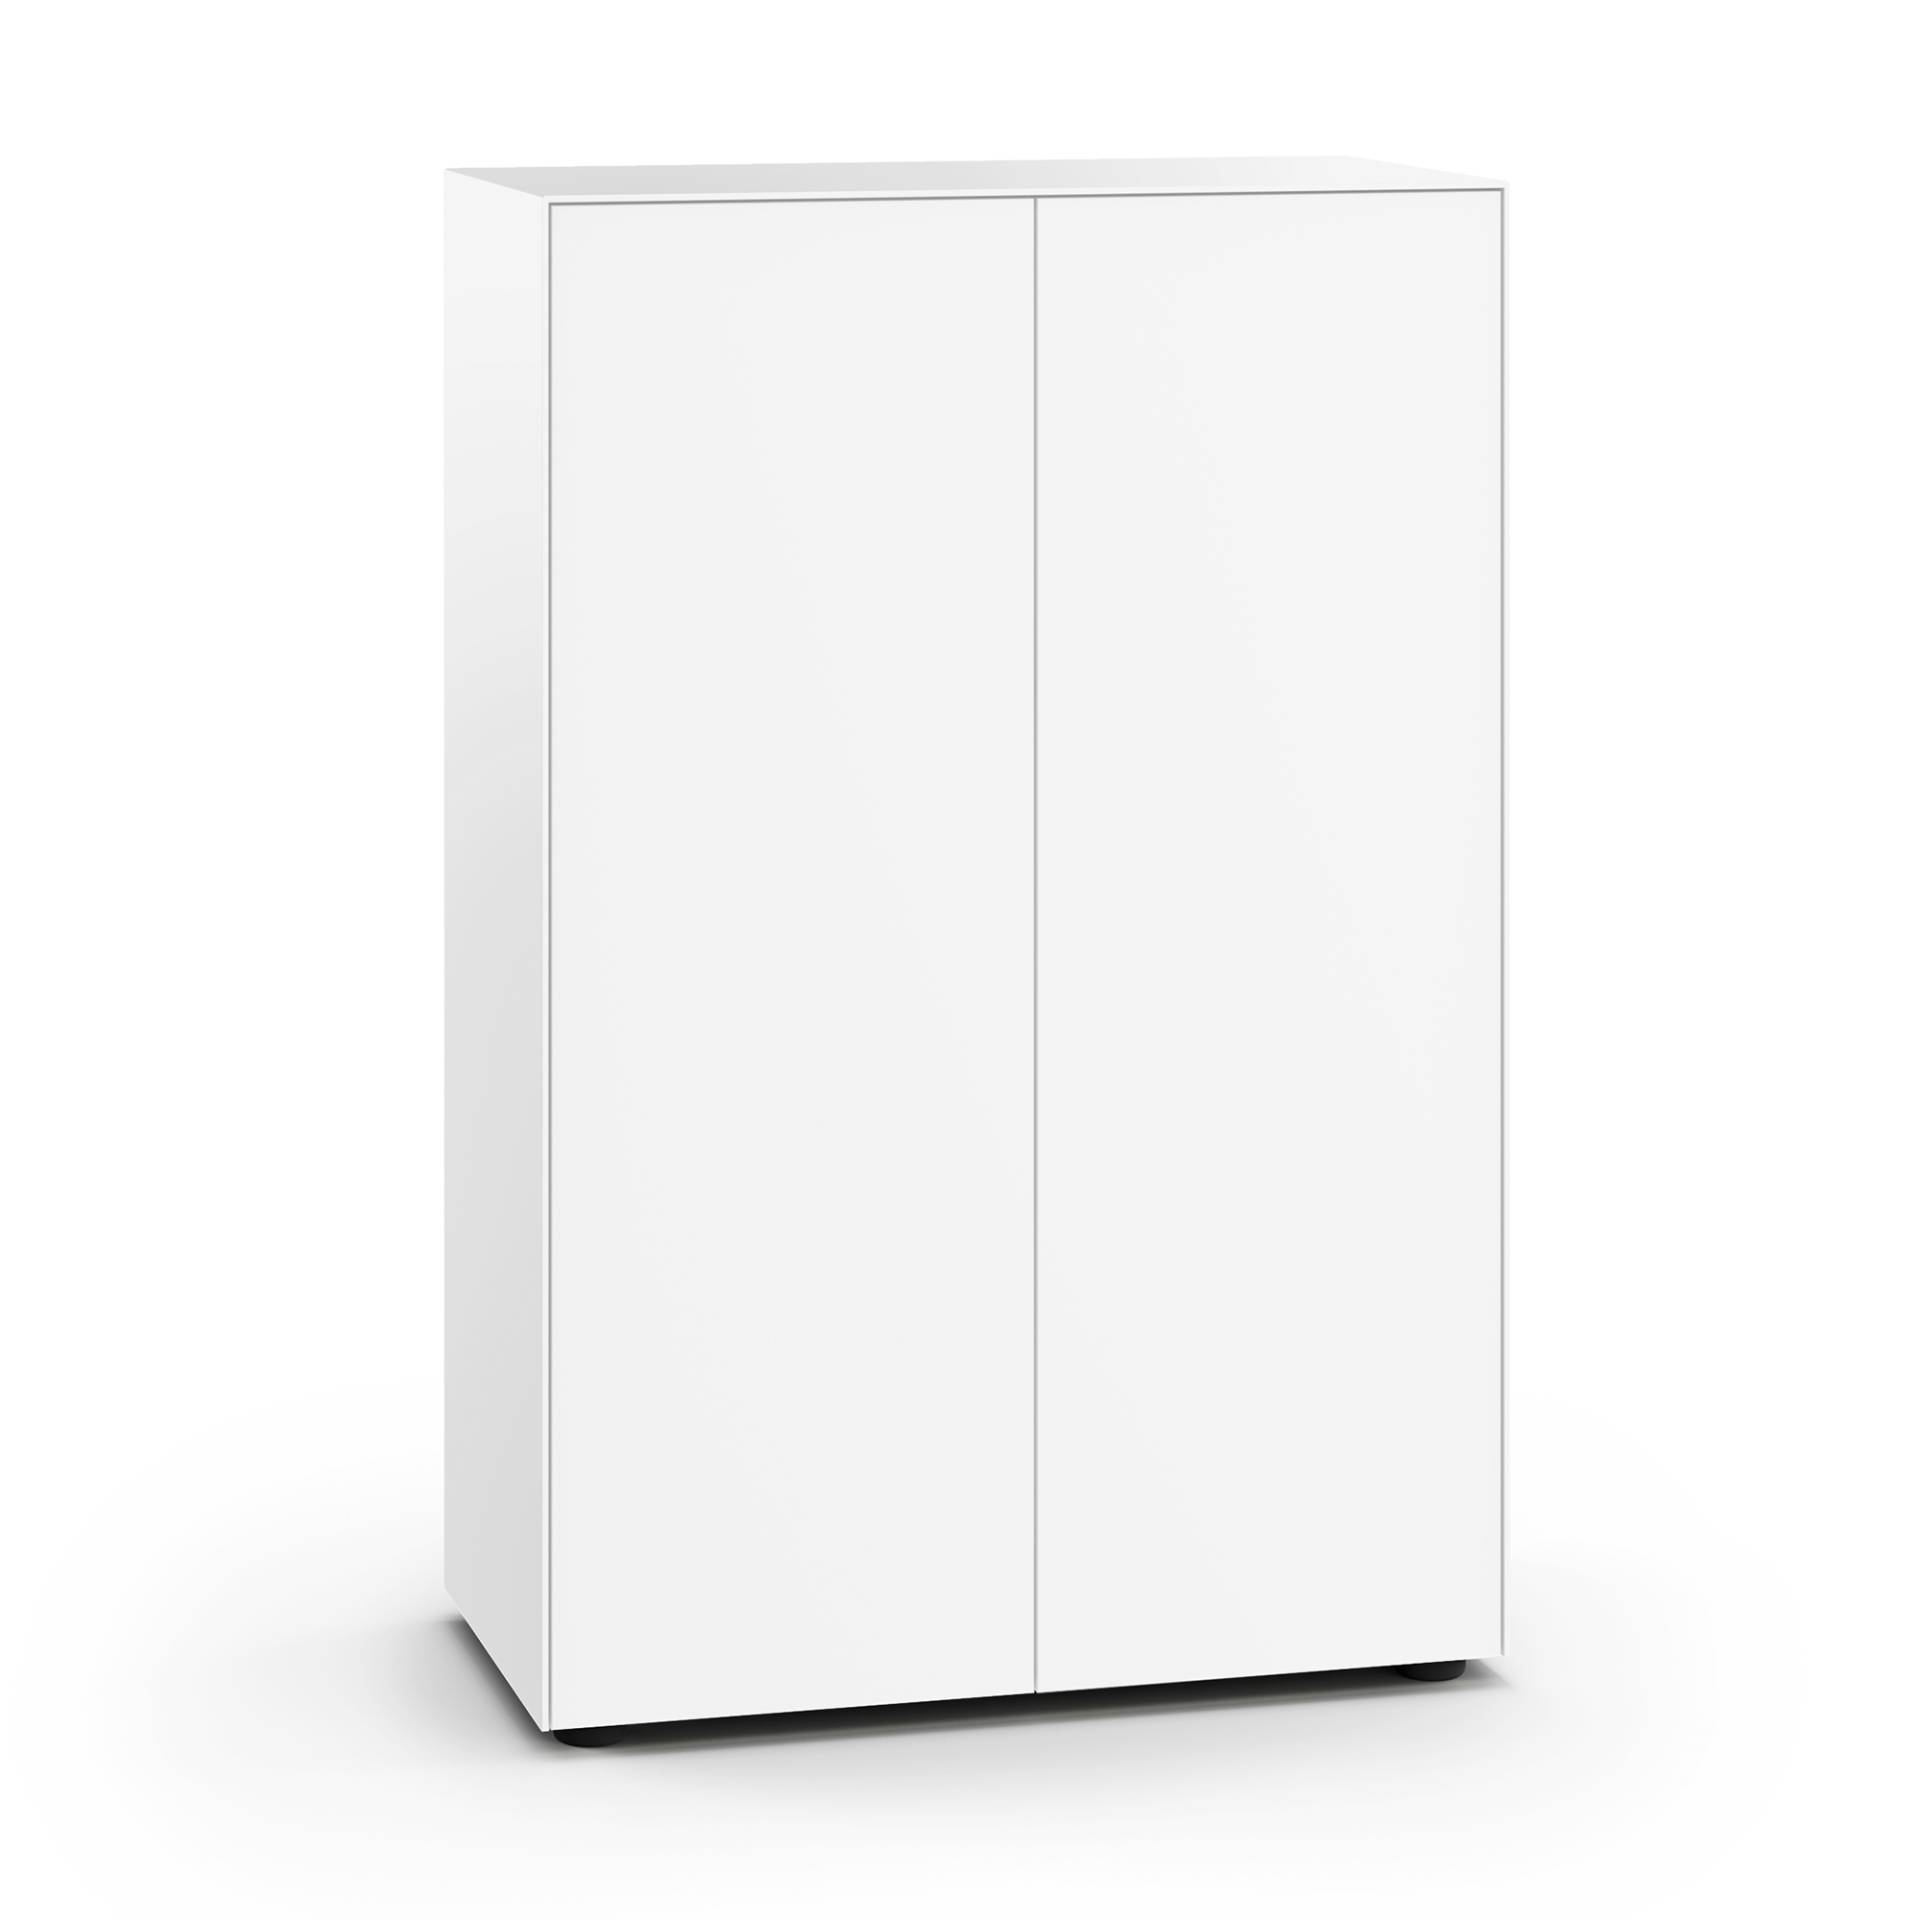 Piure - Nex Pur Office Türbox 75x40x112,5cm - weiß RAL 9016/MDF matt lackiert/mit Gleitfüßen H 3cm/2x Fachboden von Piure